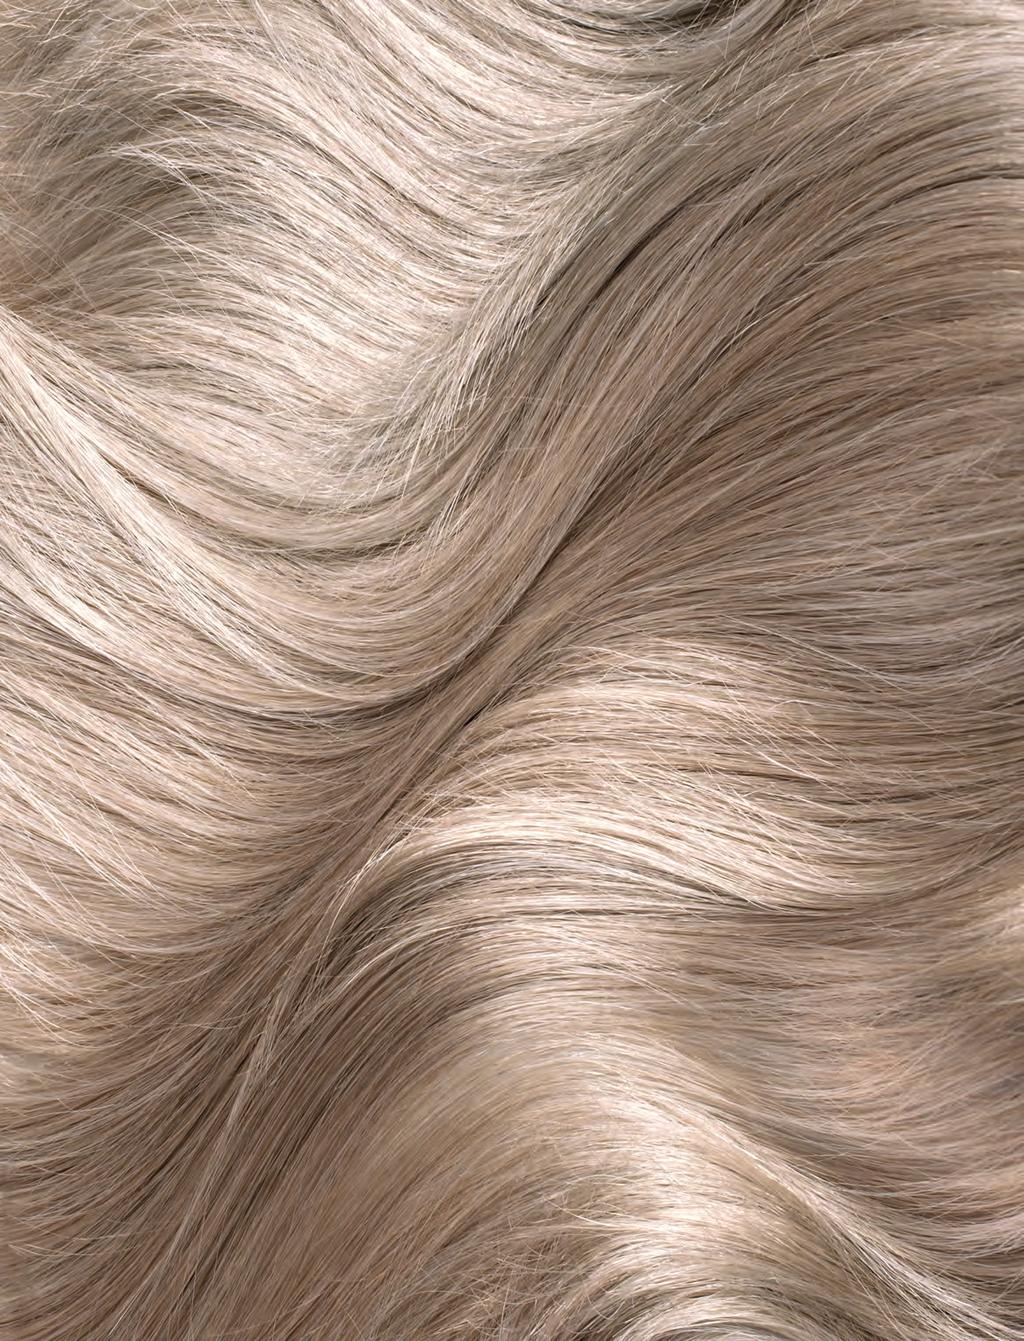 UNA GRANDE INNOVAZIONE NEL MONDO DELLA BELLEZZA Il 50% delle donne che oggi non colora i capelli, vorrebbe farlo ma ha paura di danneggiarli La tipologia di prodotti utilizzati rappresenta il fattore